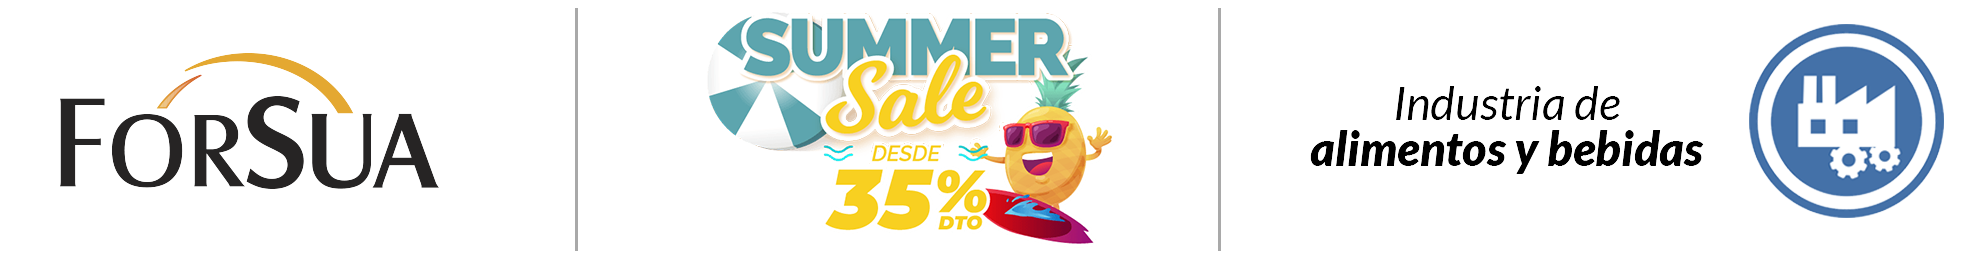 Summer_Sale